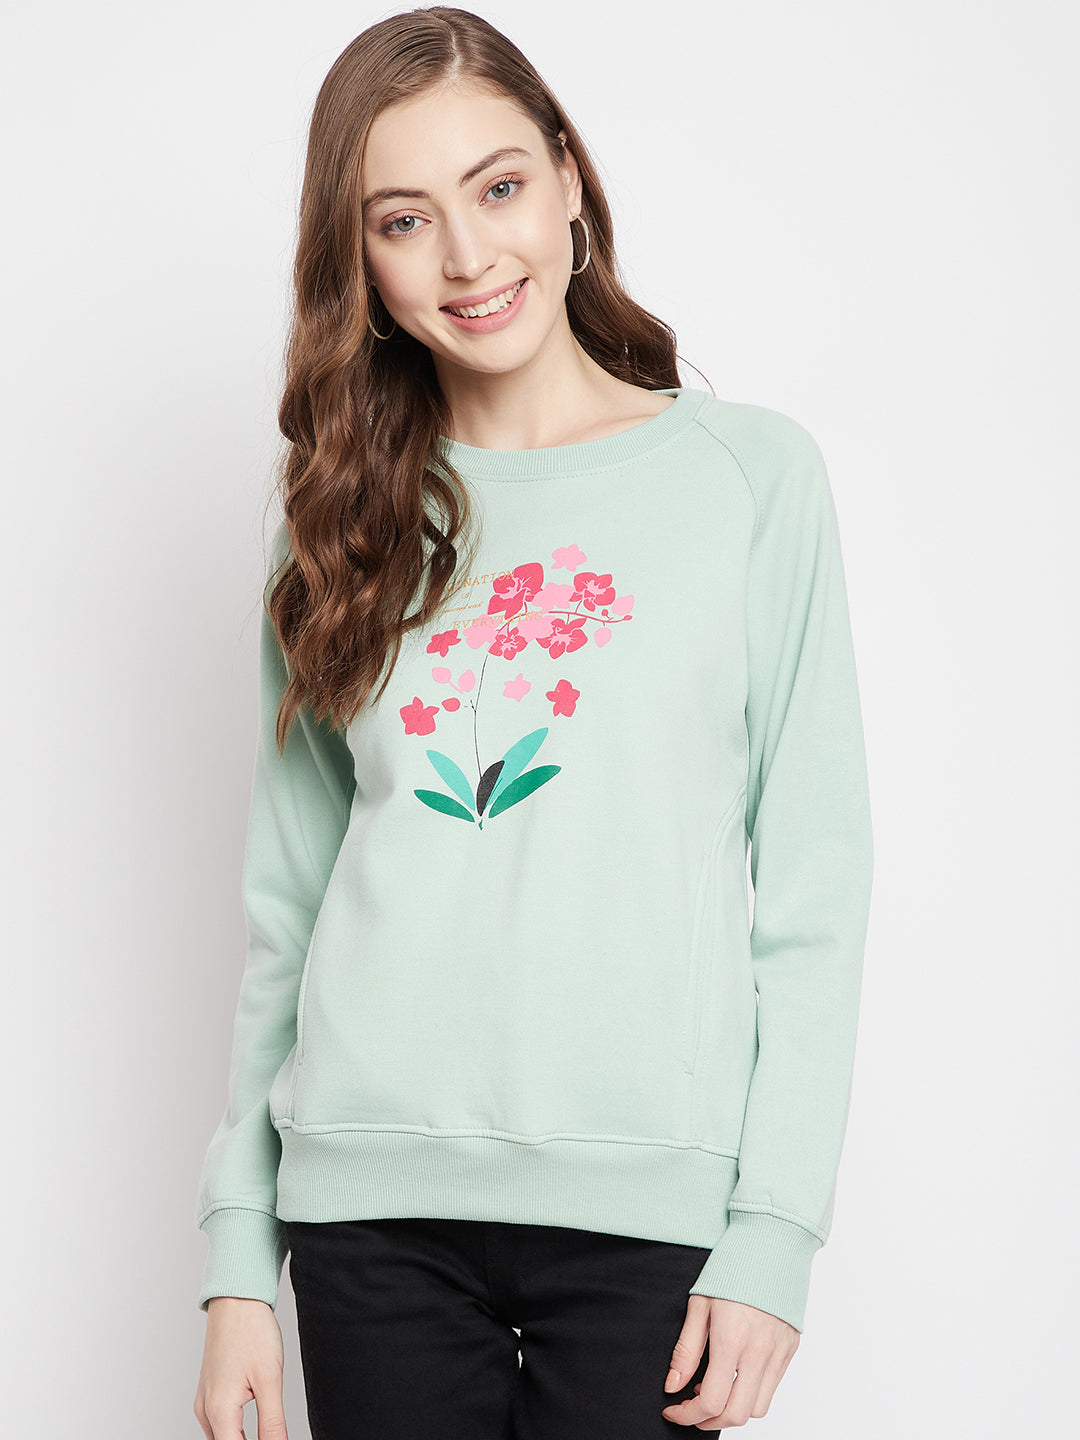 Mint Green Floral Round Neck Sweatshirt - Women Sweatshirts